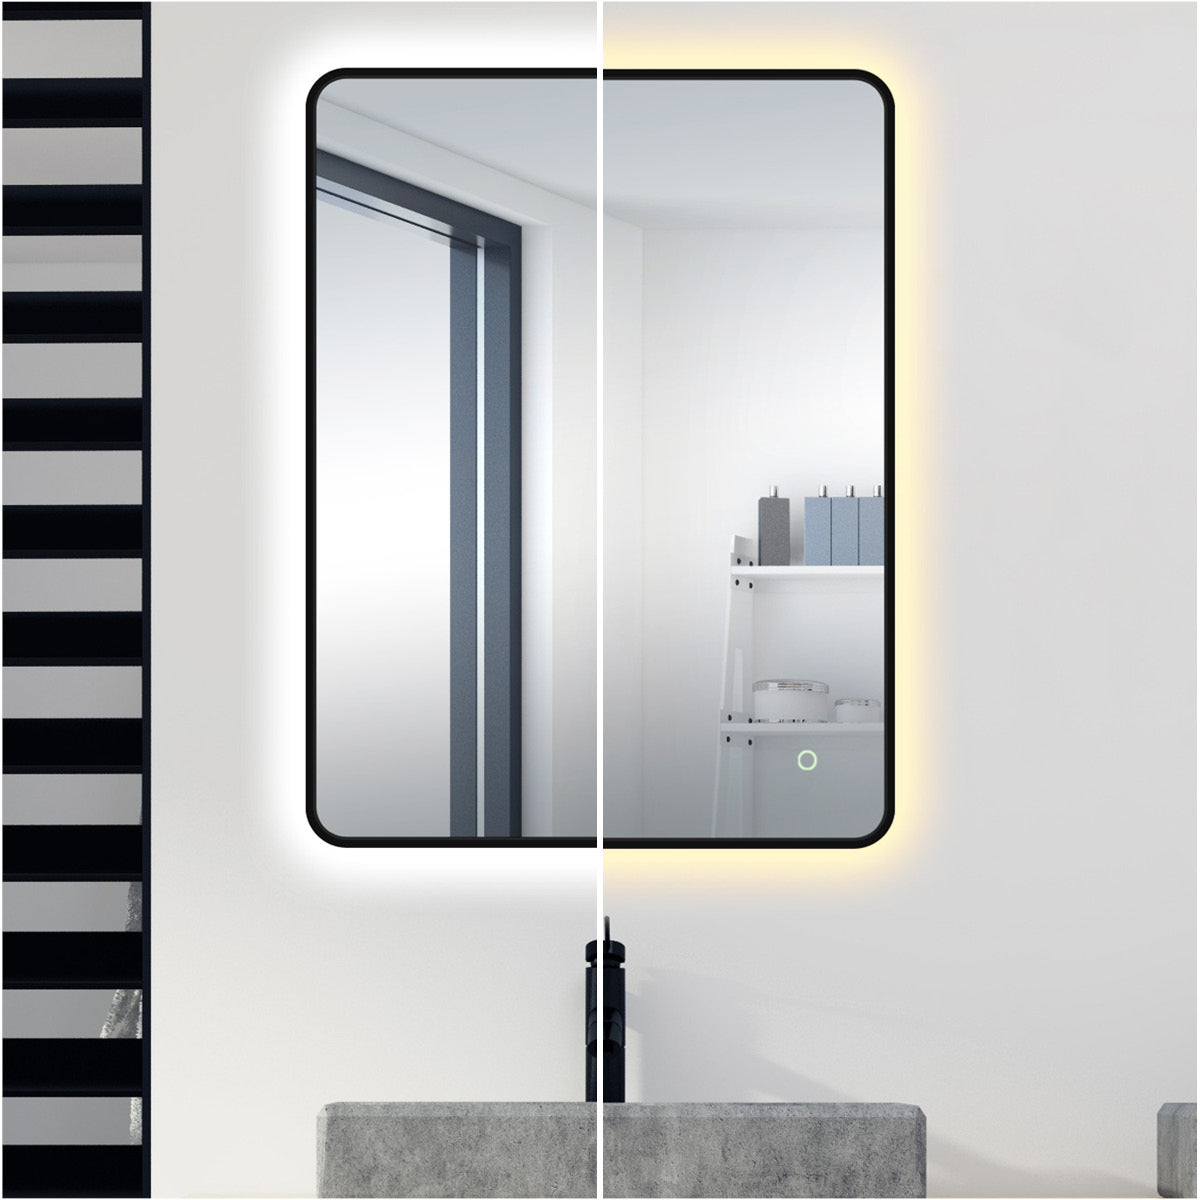 Oslo Curve LED Bathroom Mirror #size_600mm-x-800mm